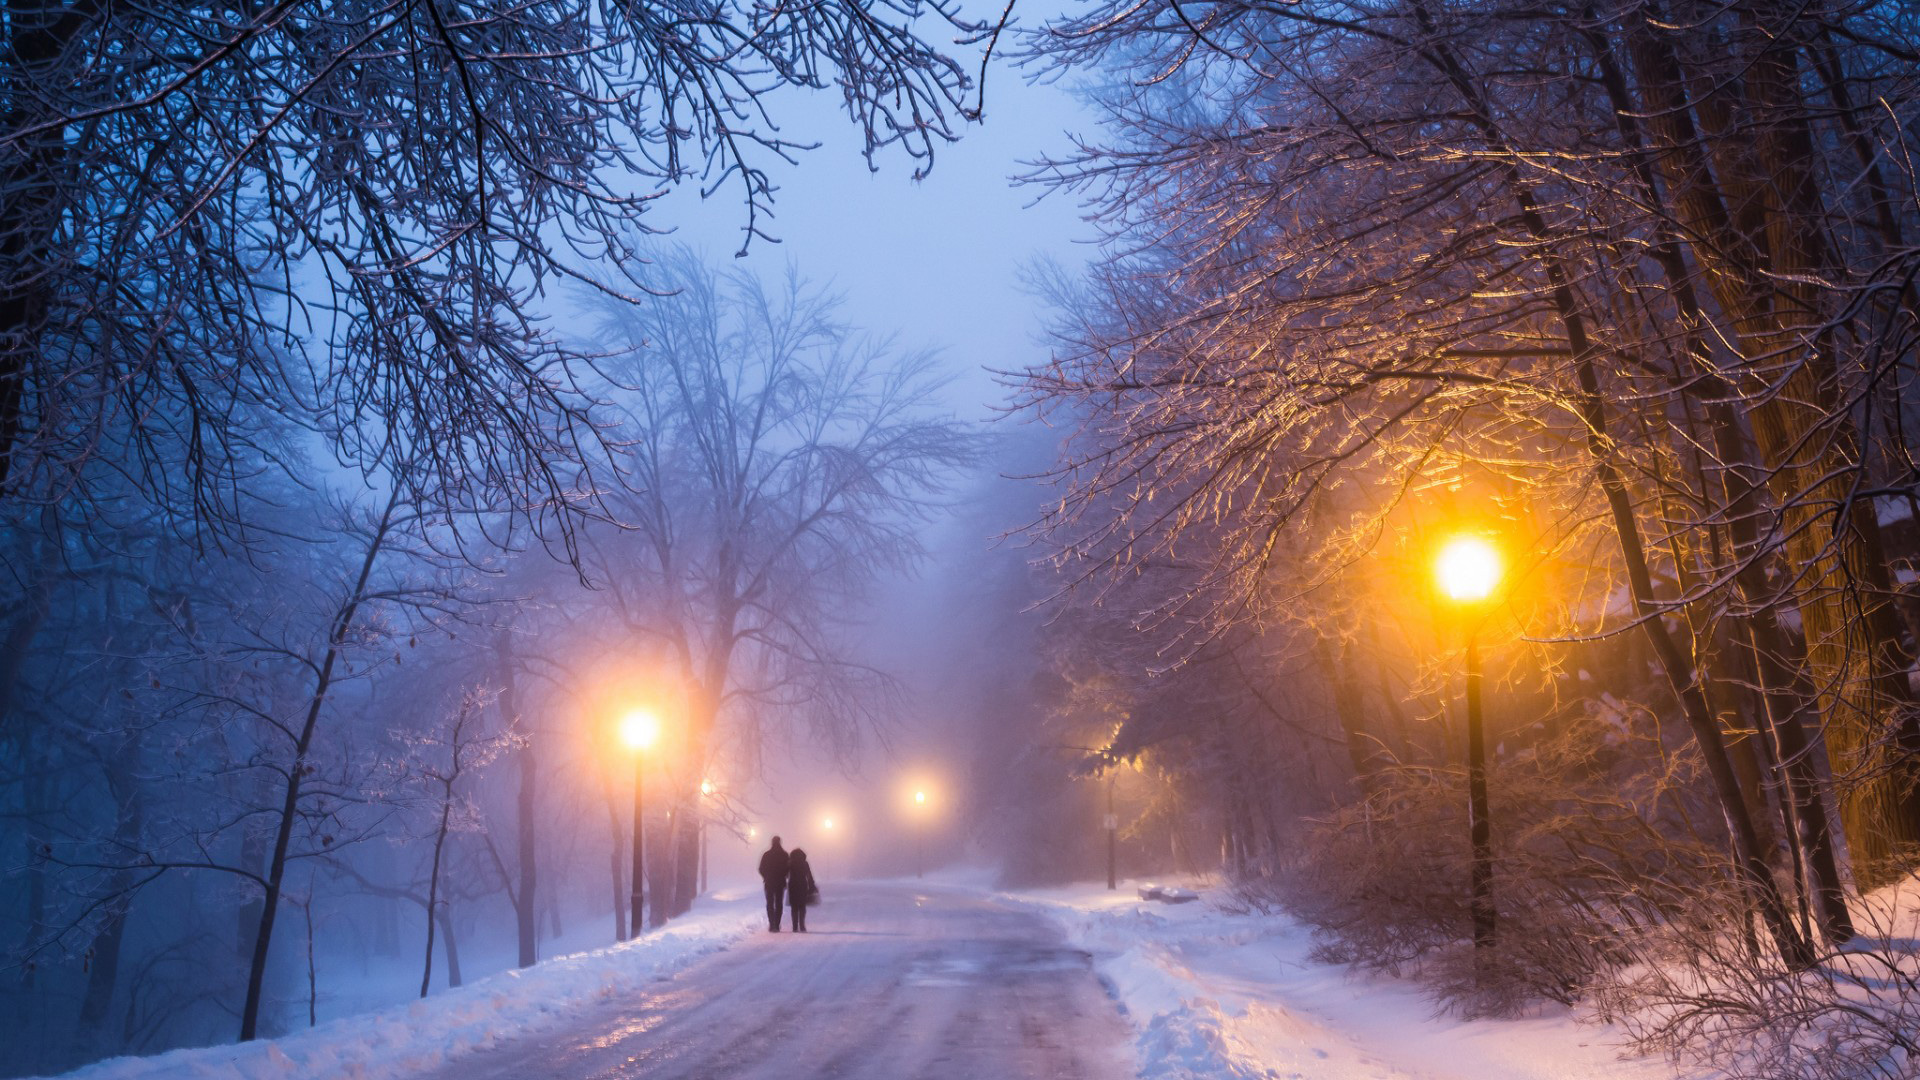 冬天，晚上，树林，道路，恋人，情侣，路灯，浪漫，雪景，风景桌面壁纸